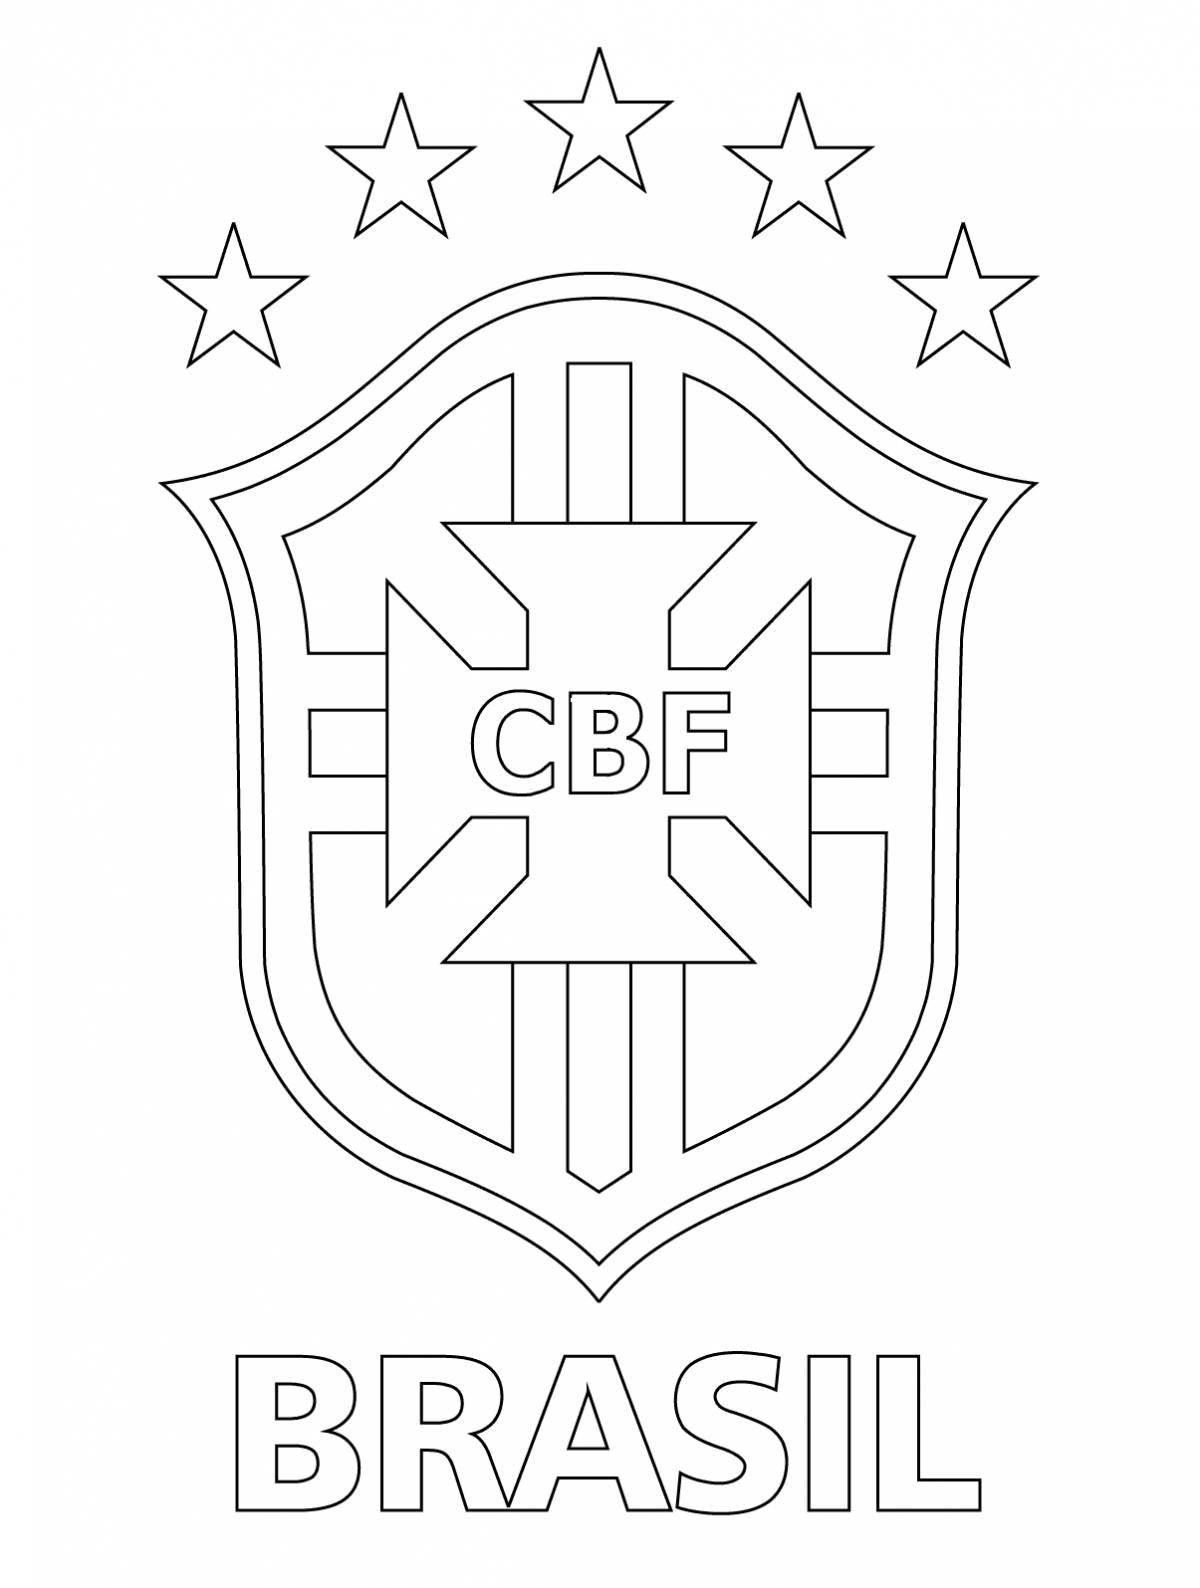 Exciting CSKA logo coloring